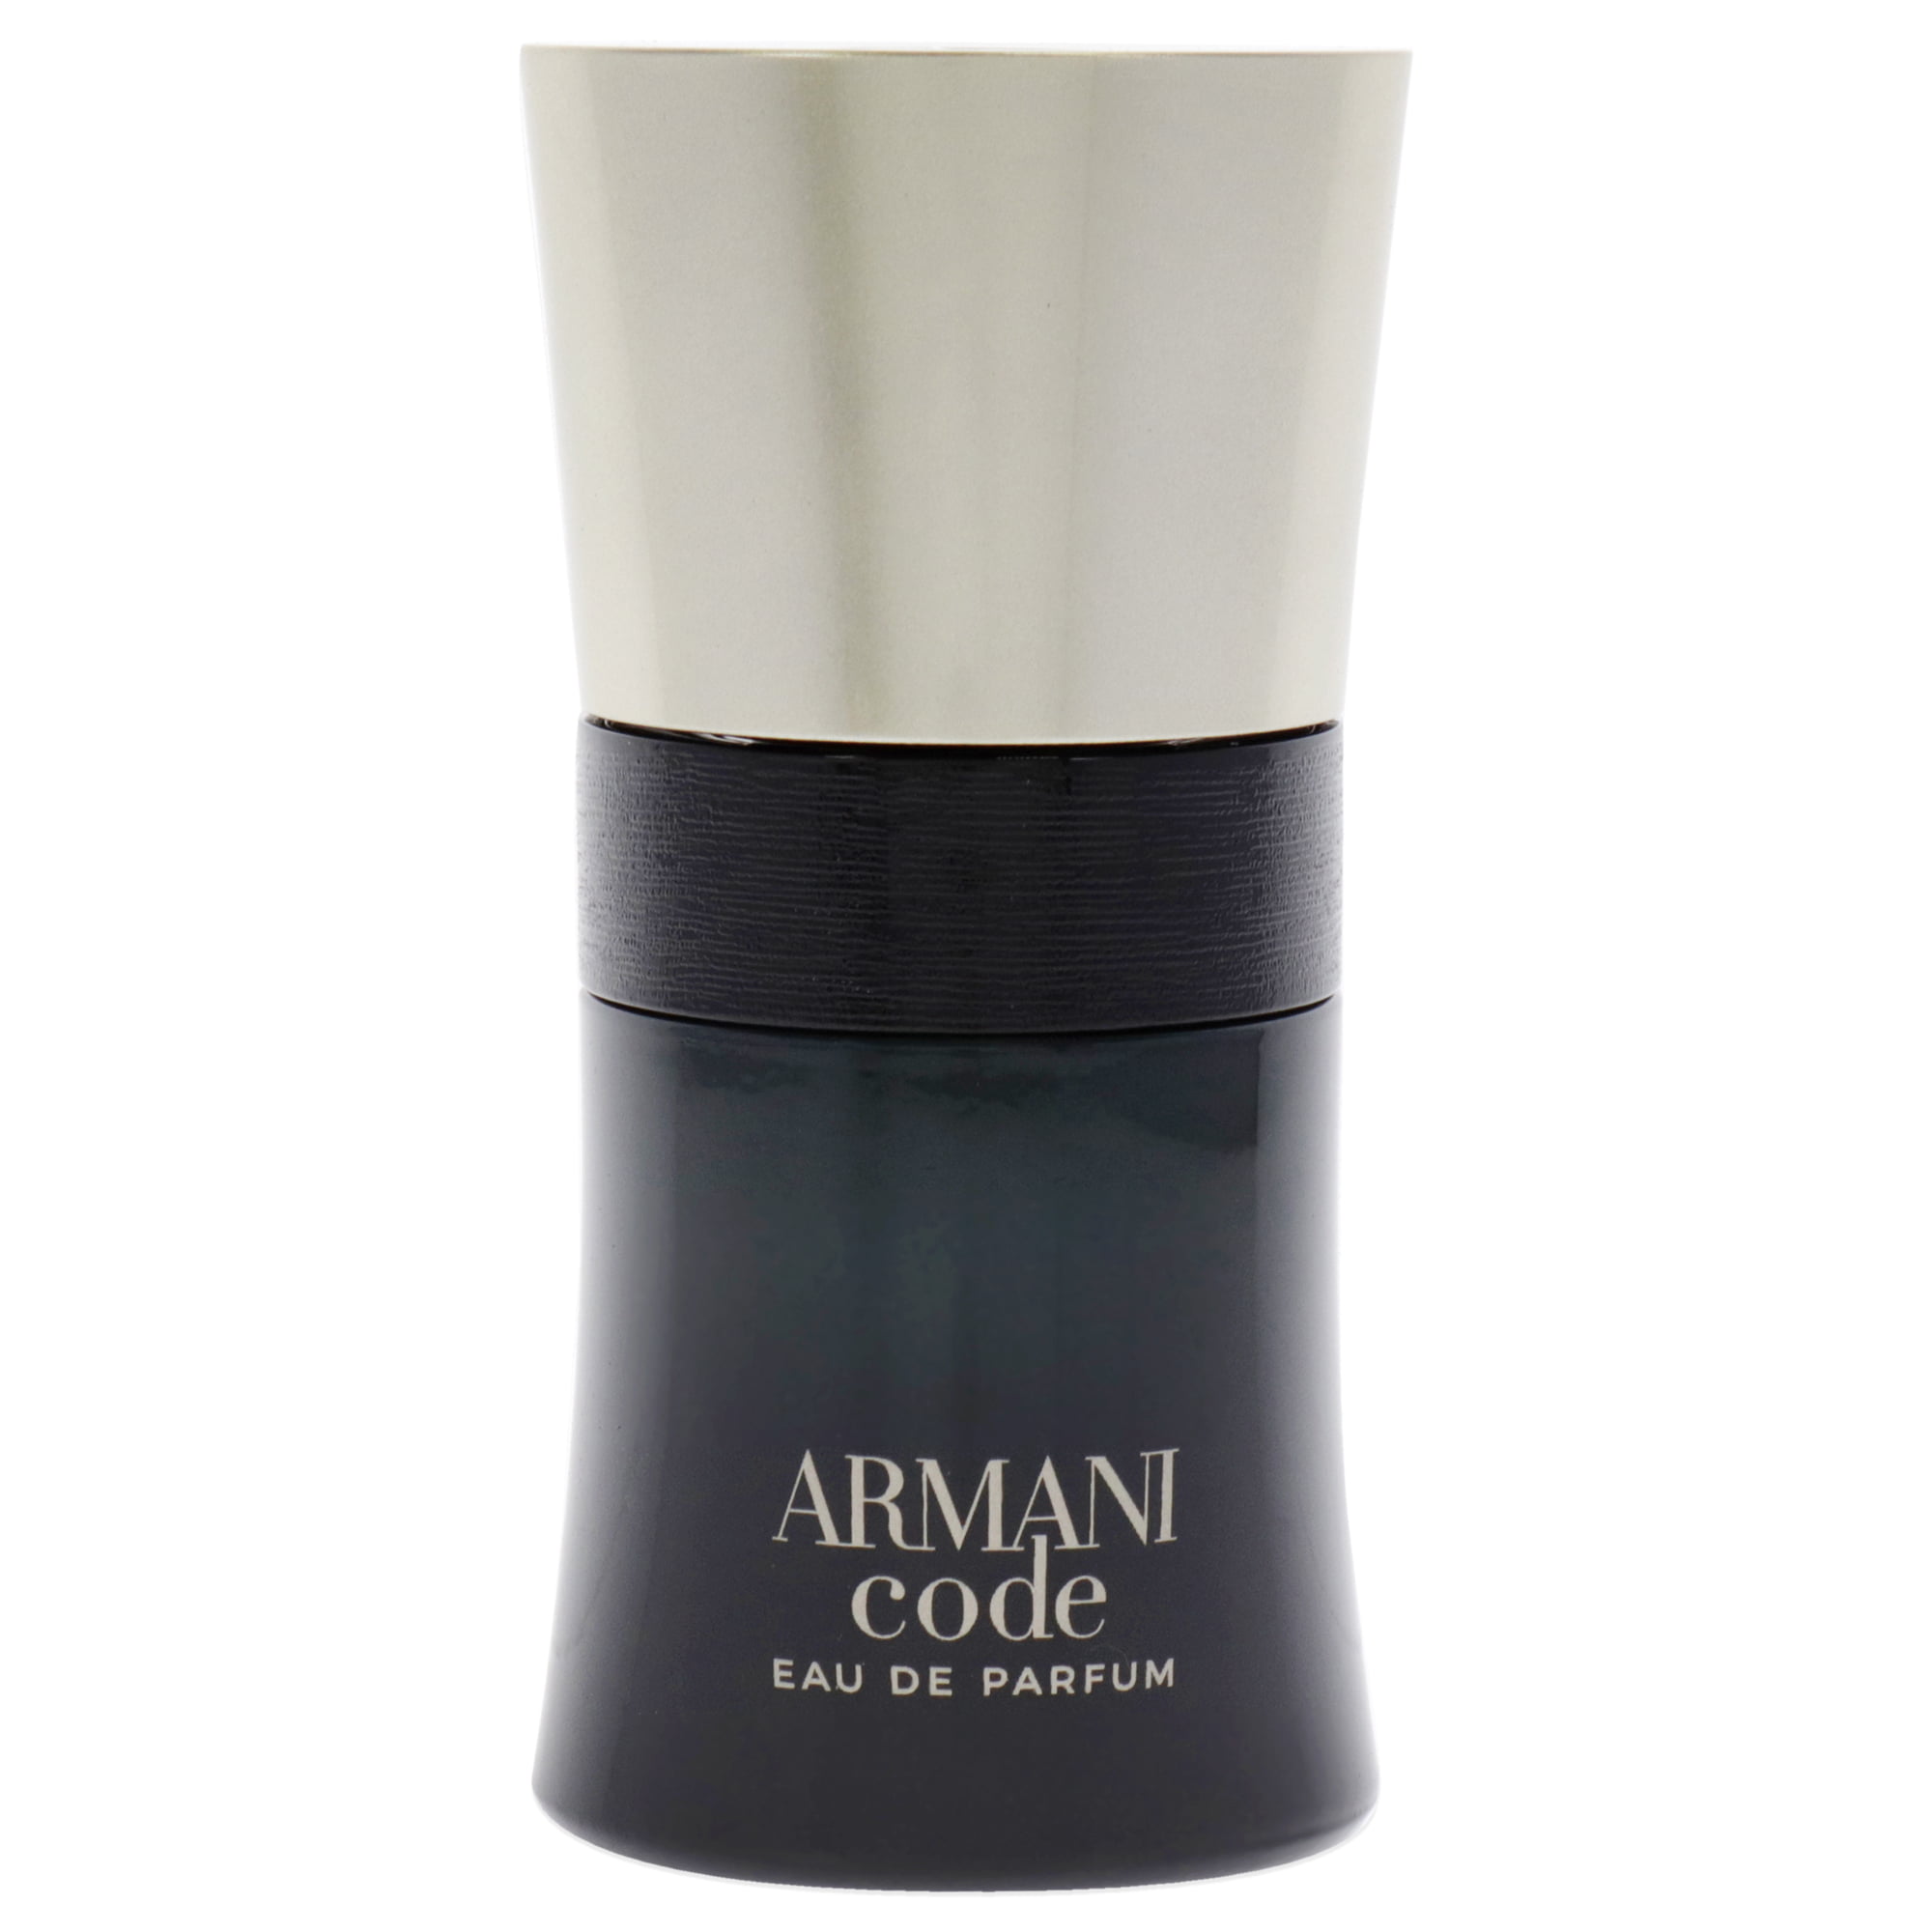 ARMANI - Armani Code Eau Parfum Spray 30ml/1oz Walmart.com